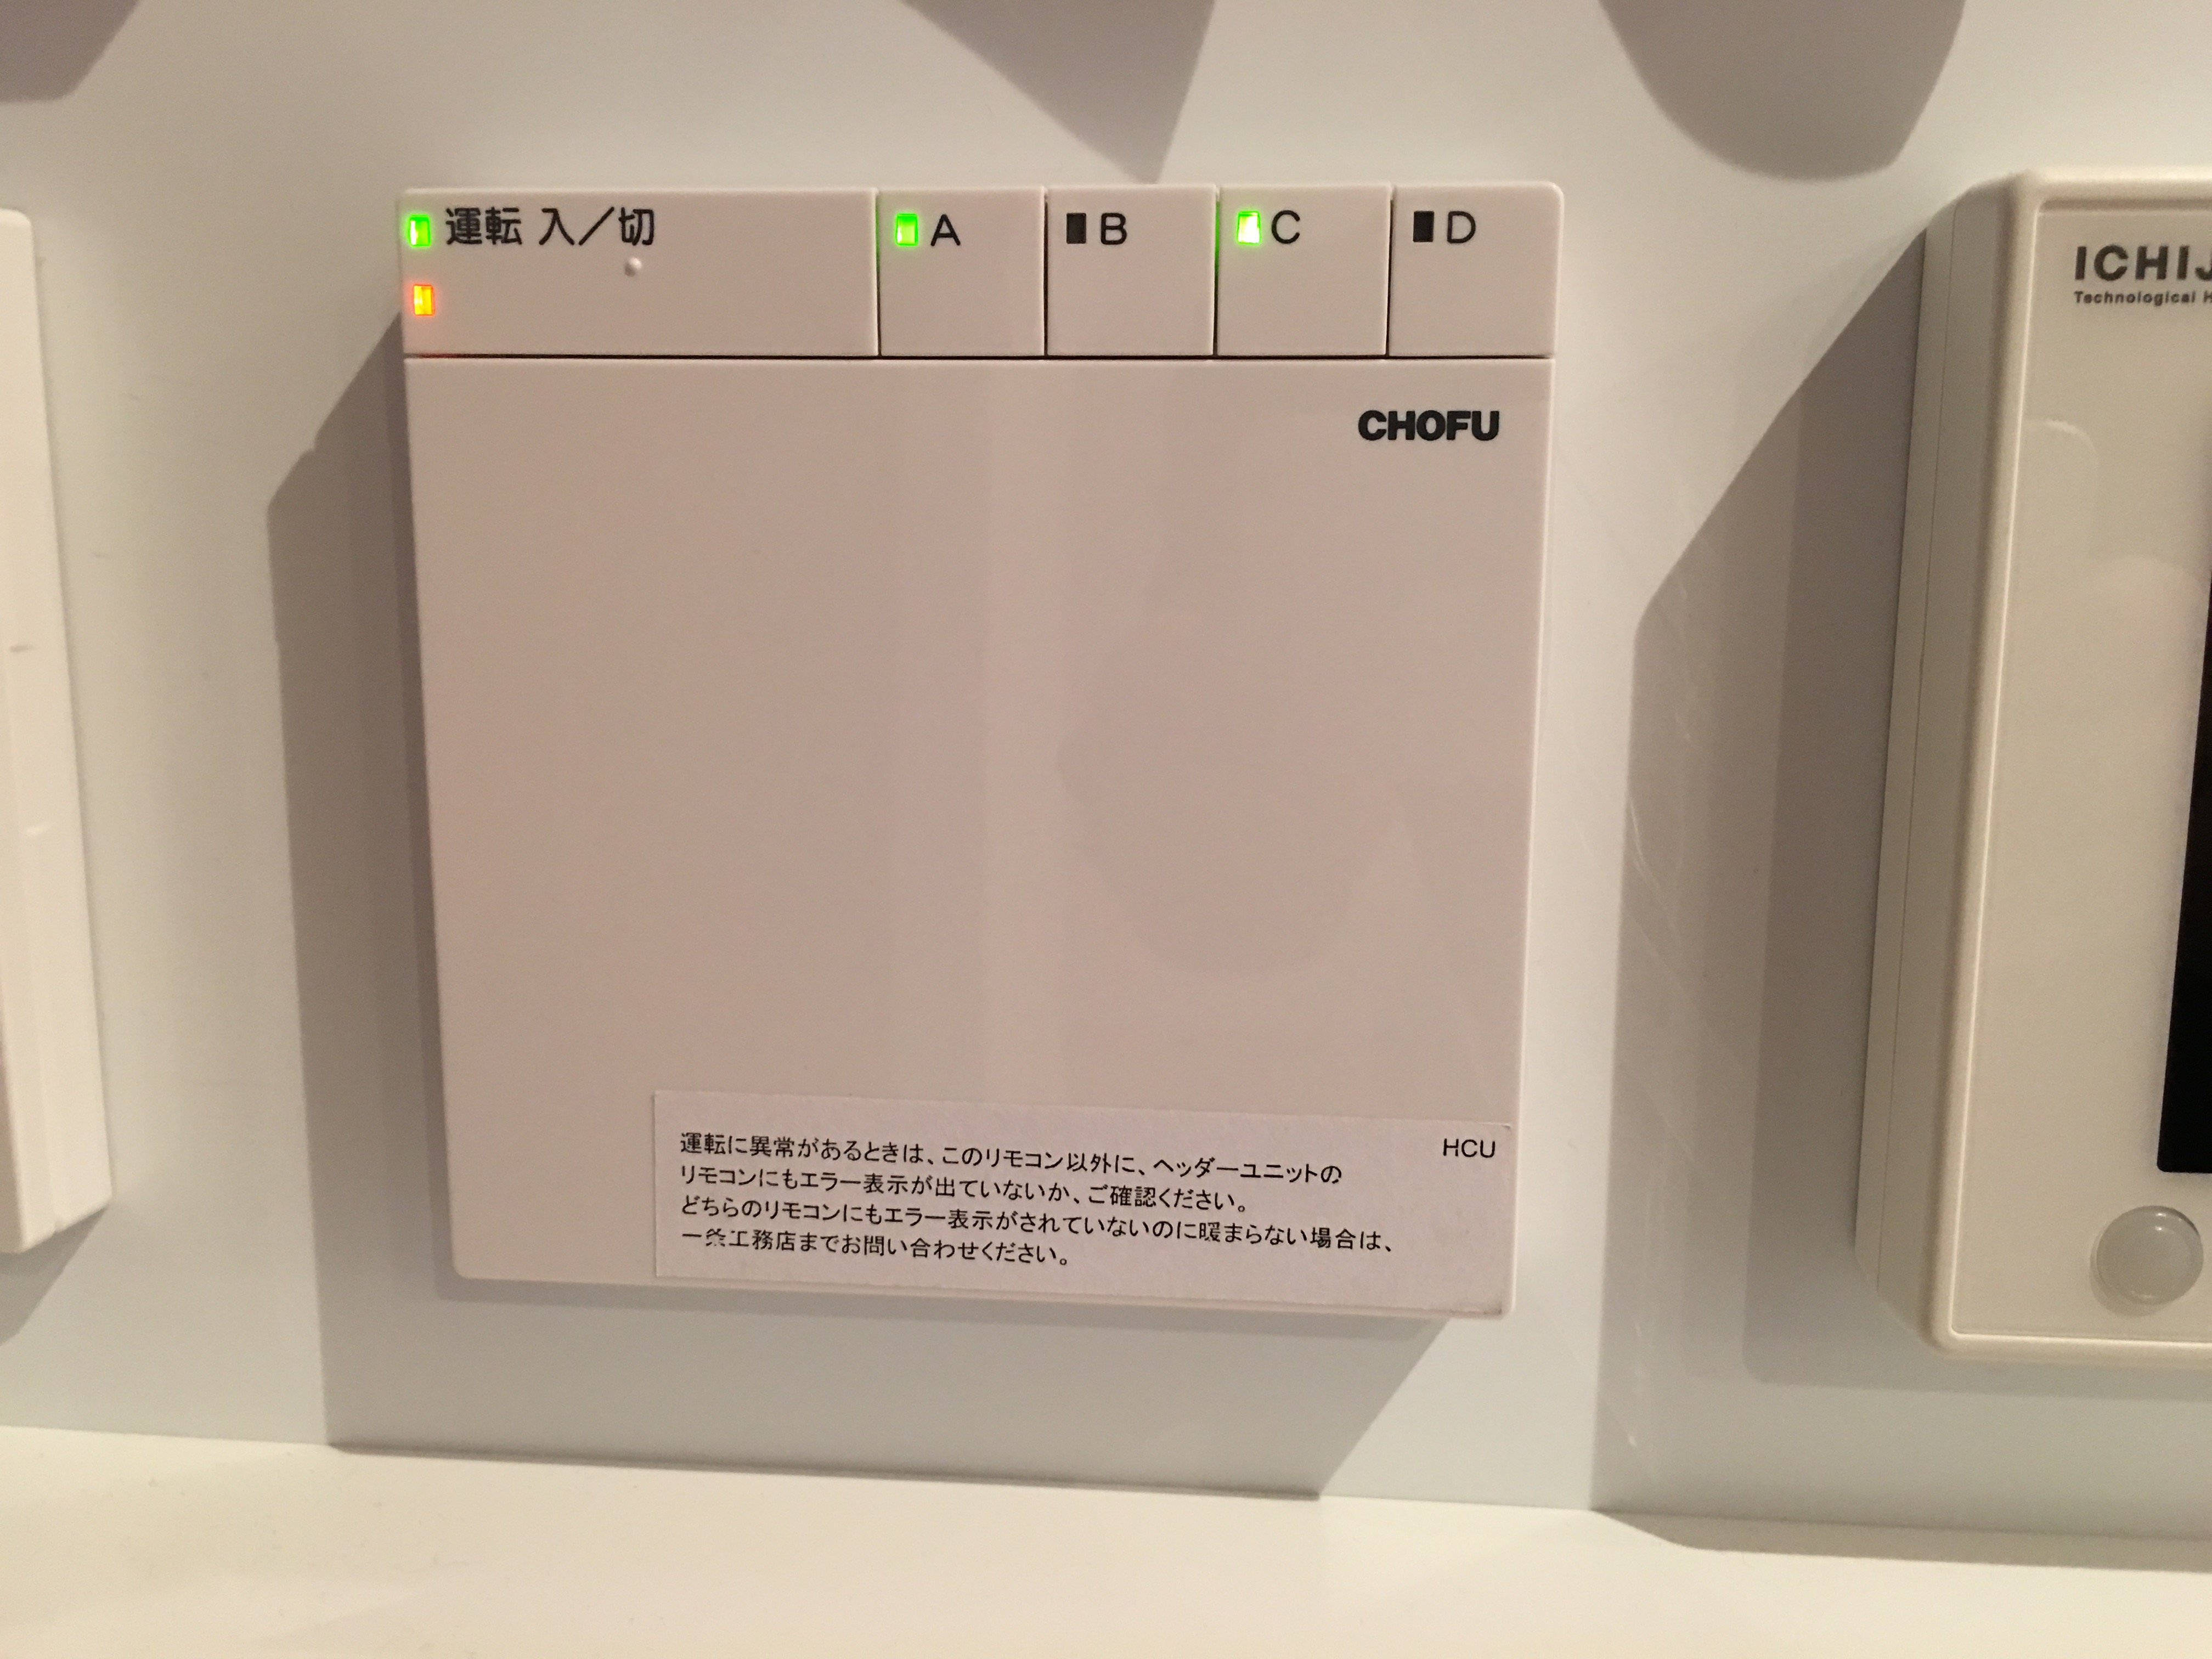 北海道で5月に暖房を使った場合の消費電力 | 一条工務店i-smartを建てたコスケの新築計画